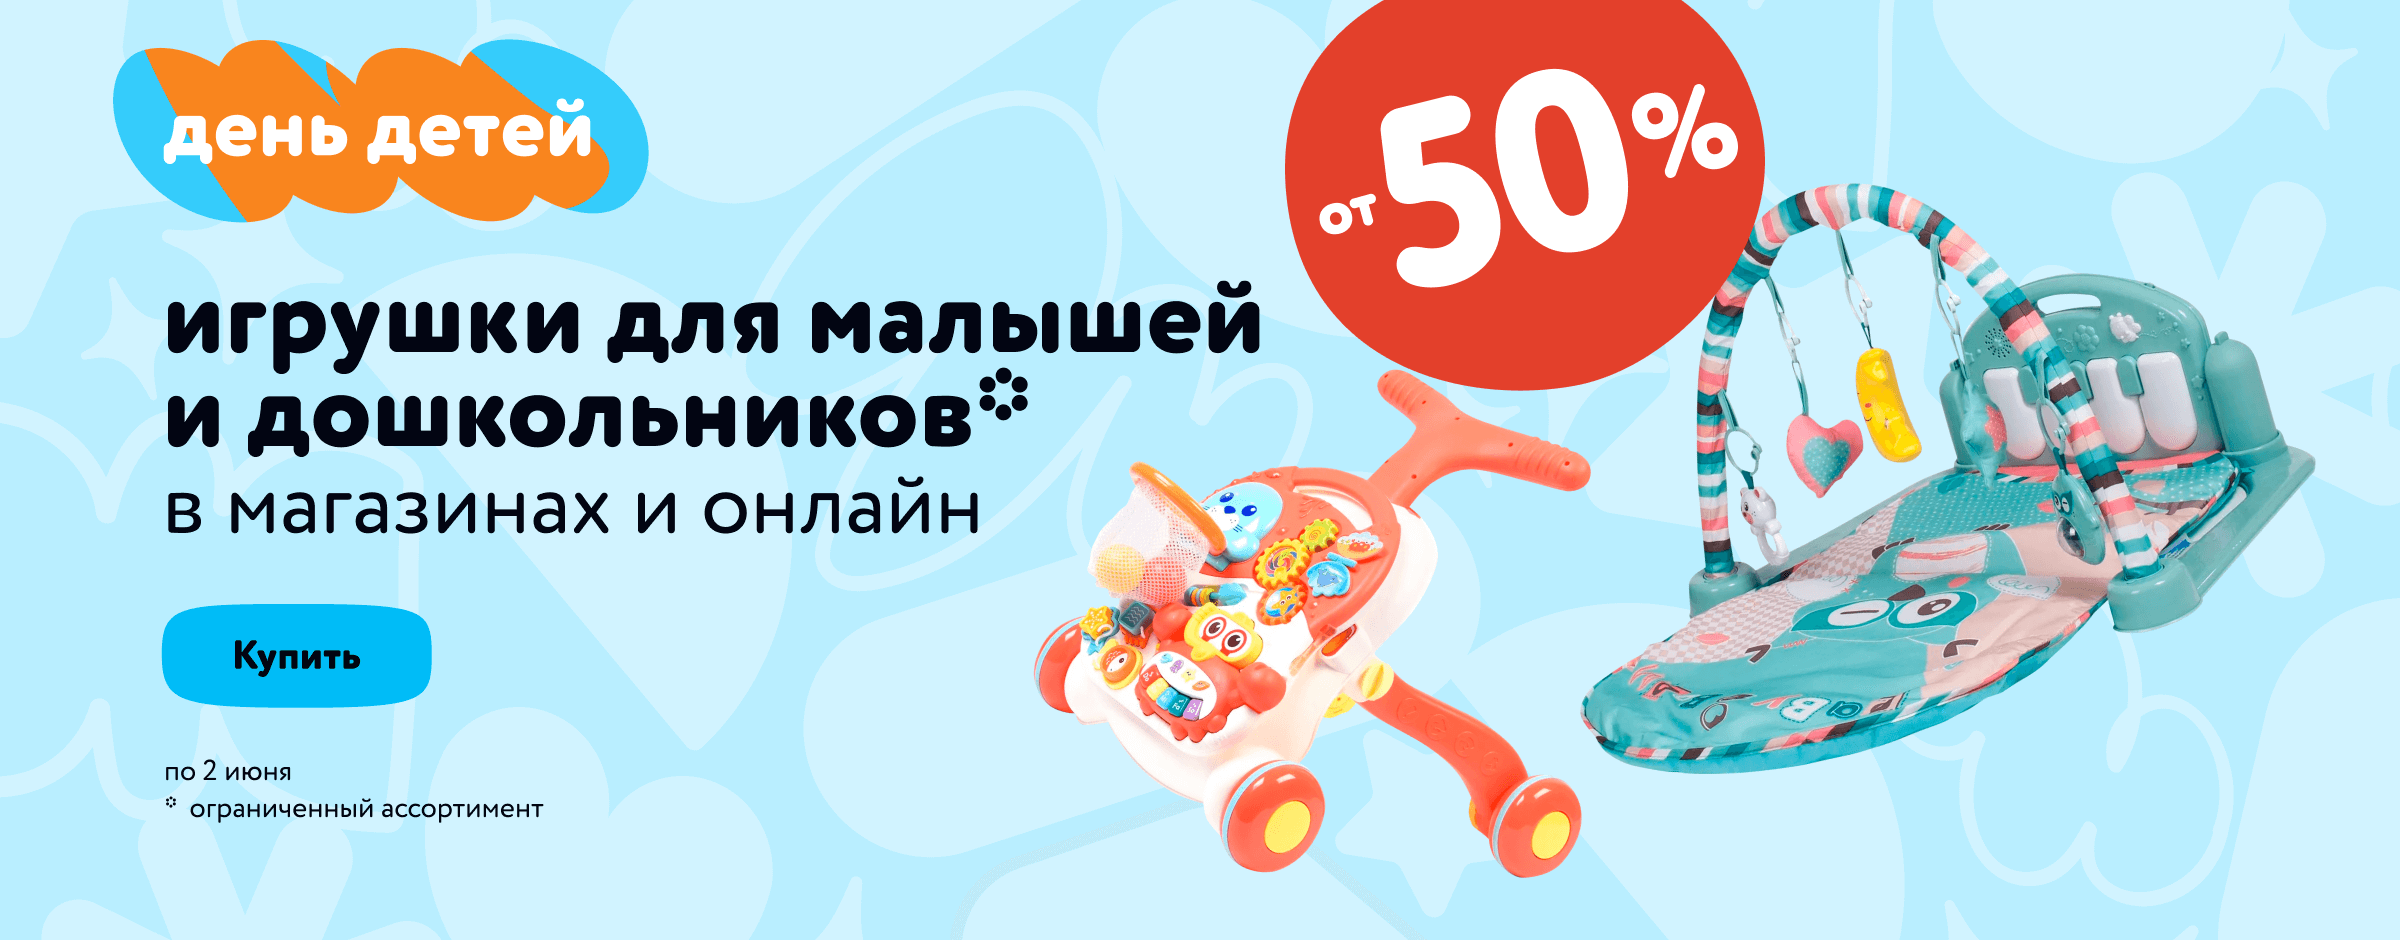 Скидки от 50% на игрушки для малышей и дошкольников